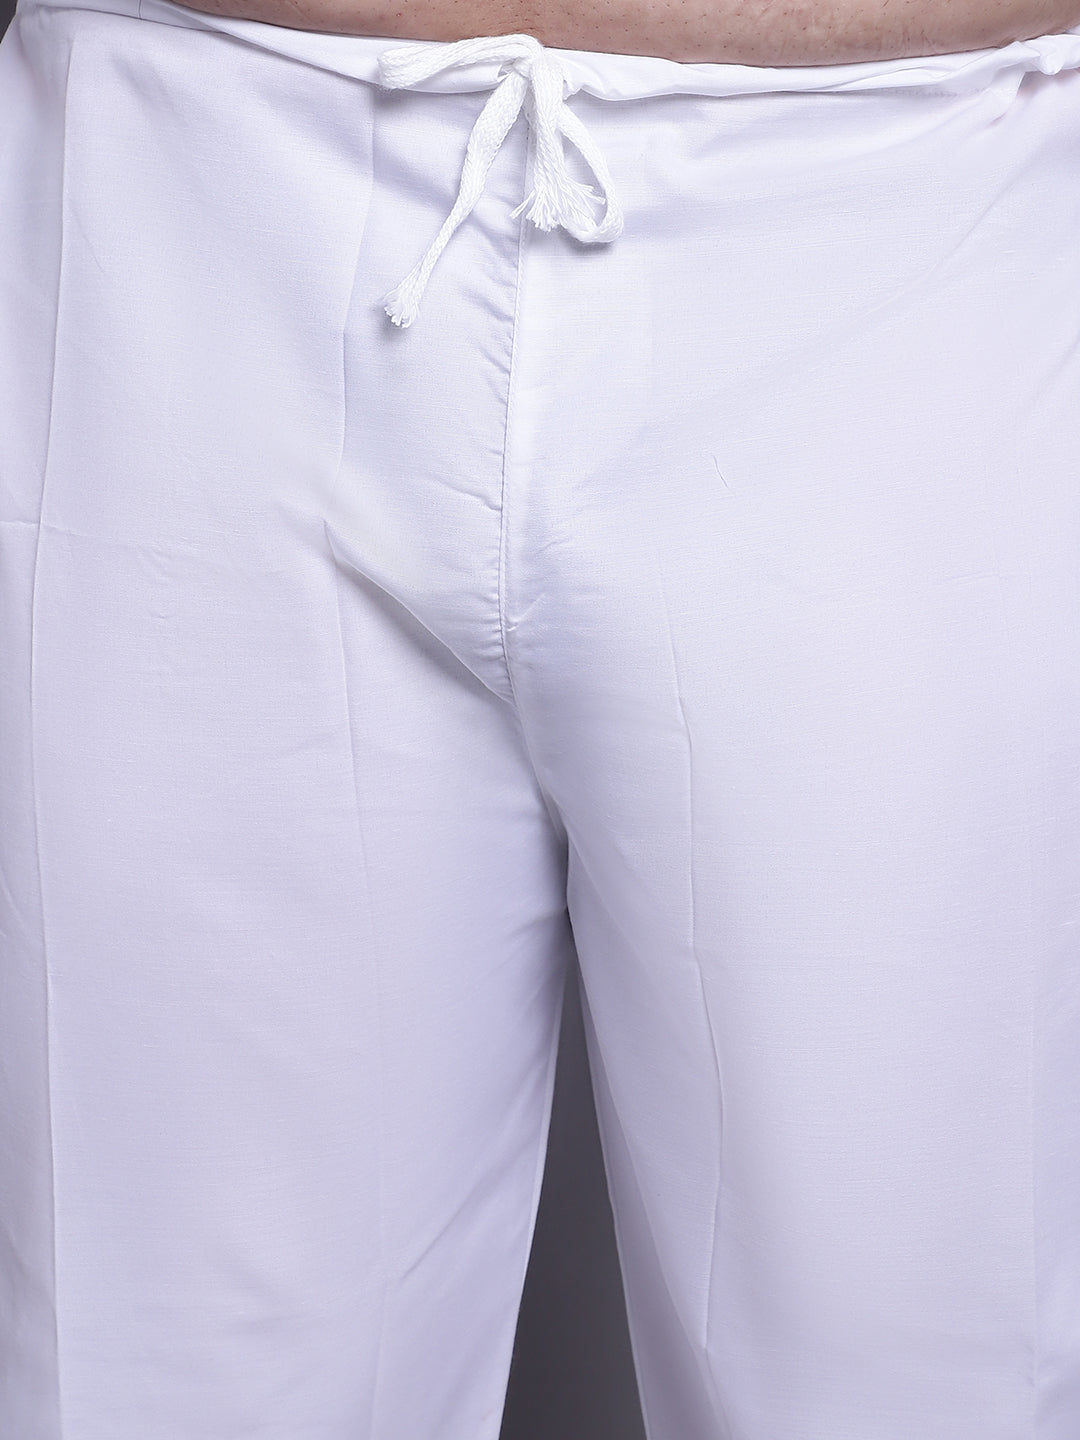 Men's Cotton Linen Blue Kurta and White Pyjama With Mustard Cotton Nehrujacket